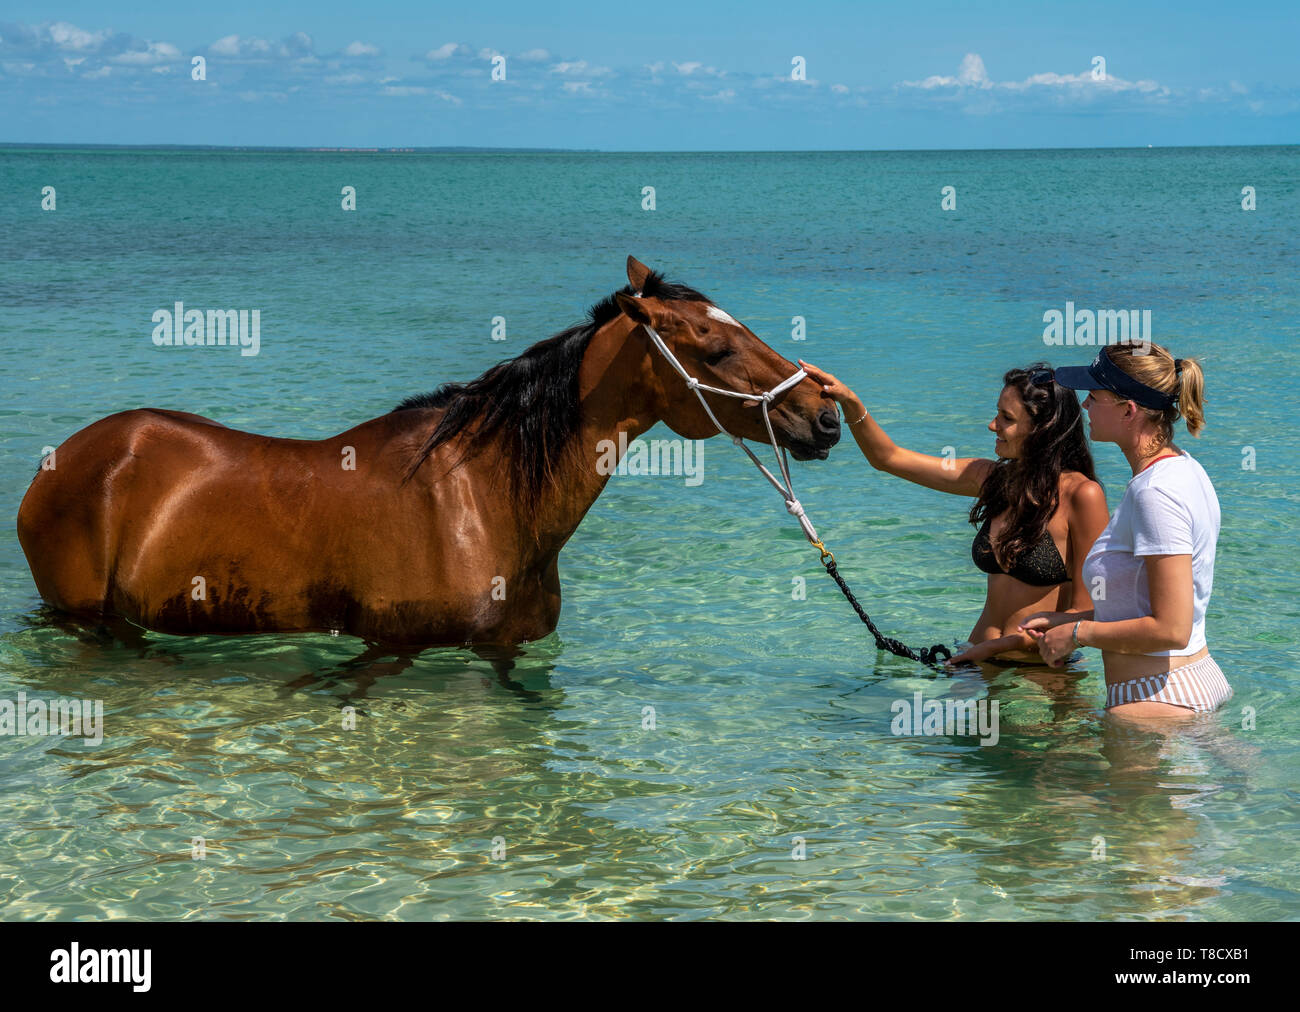 Zwei junge Damen im Meer Wasser stehend mit einem Pferd Stockfoto